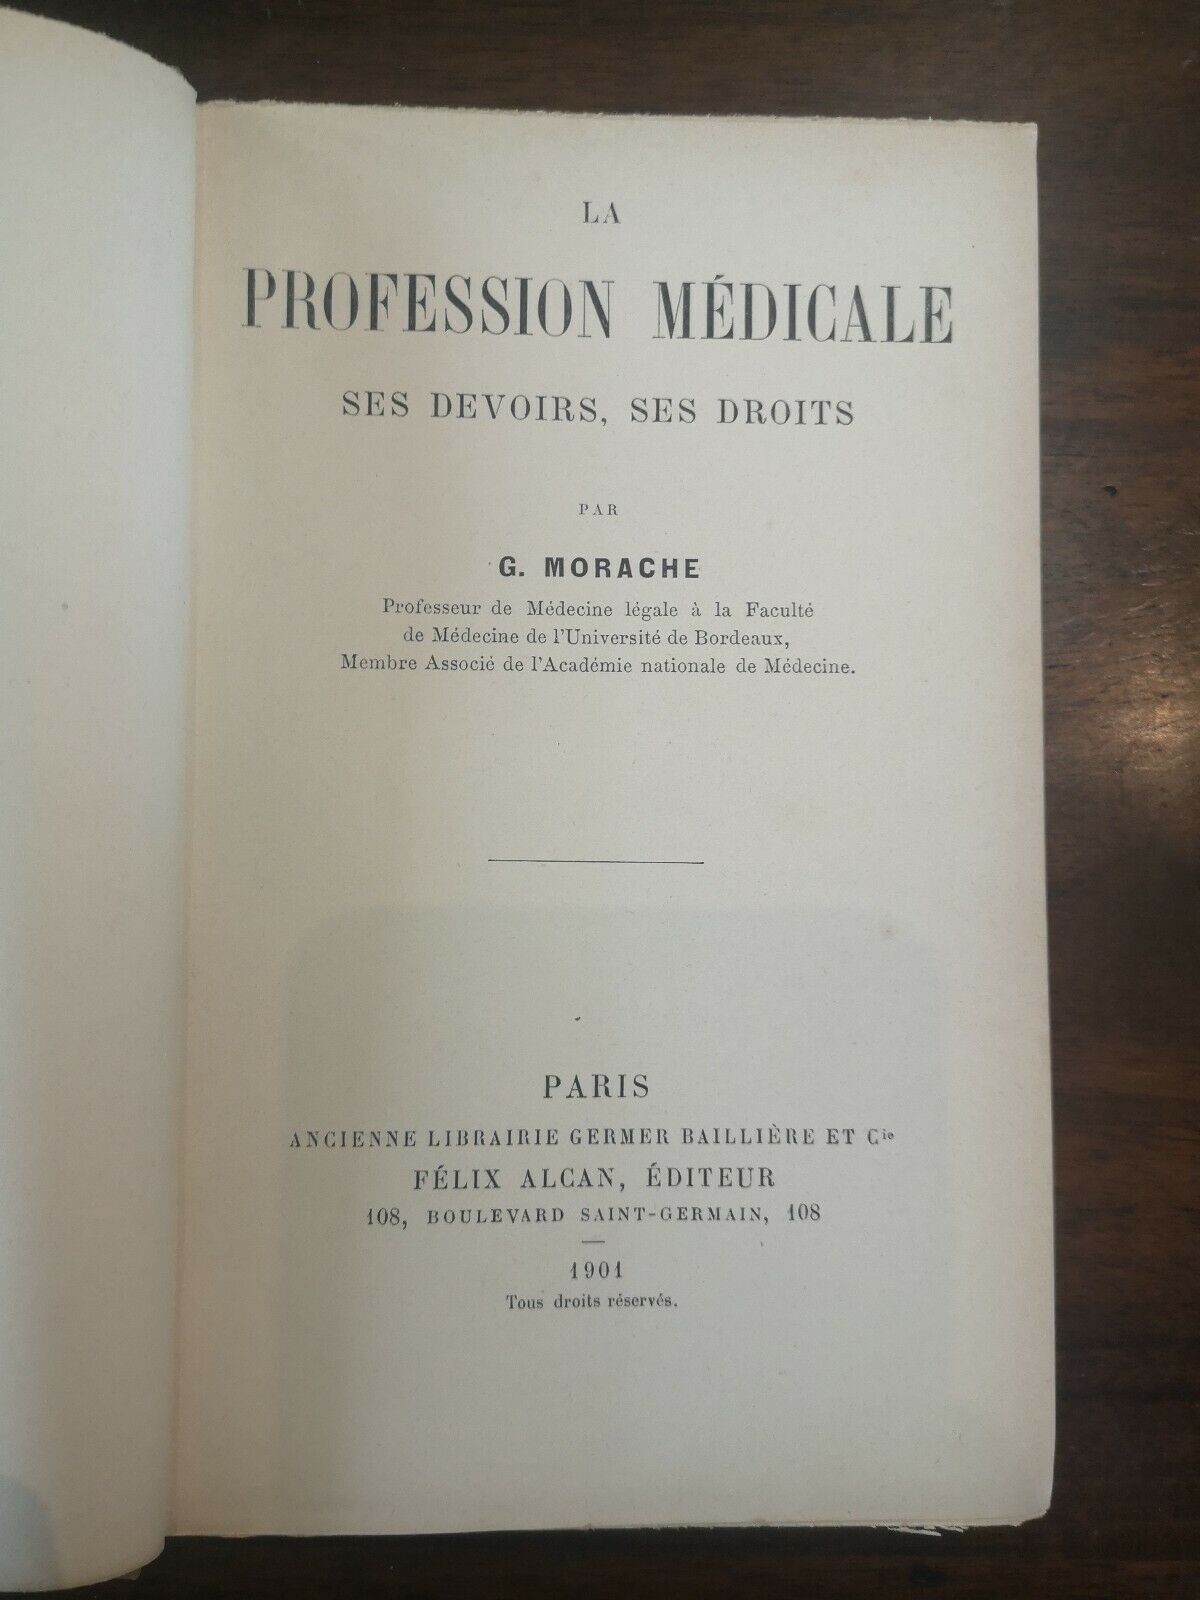 La Profession médicale, ses devoirs, ses droits, par G. Morache Felix Alcan Paris 1901